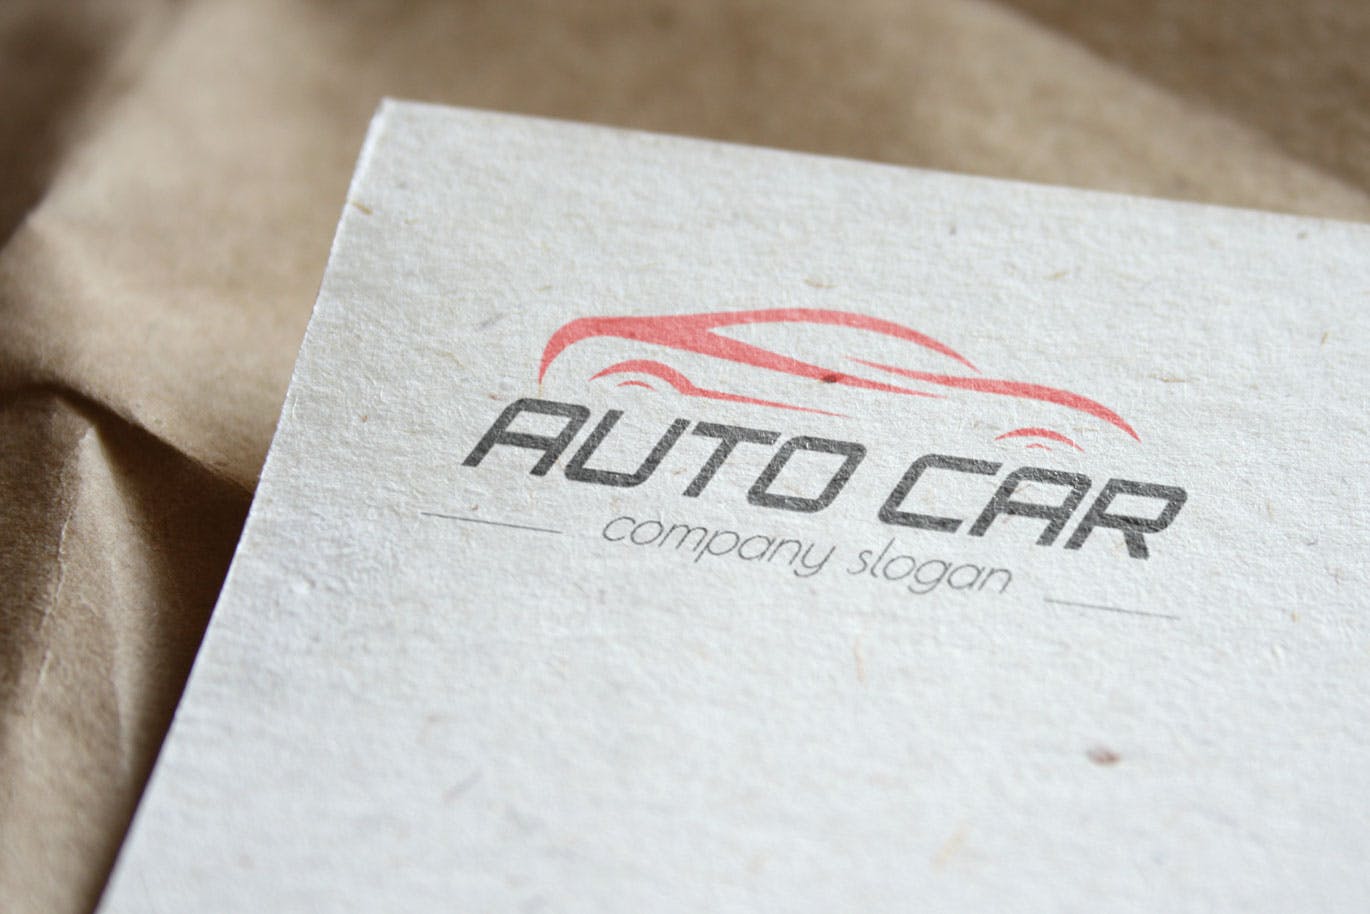 汽车相关企业品牌Logo设计16图库精选模板 Auto Car Business Logo Template插图(3)